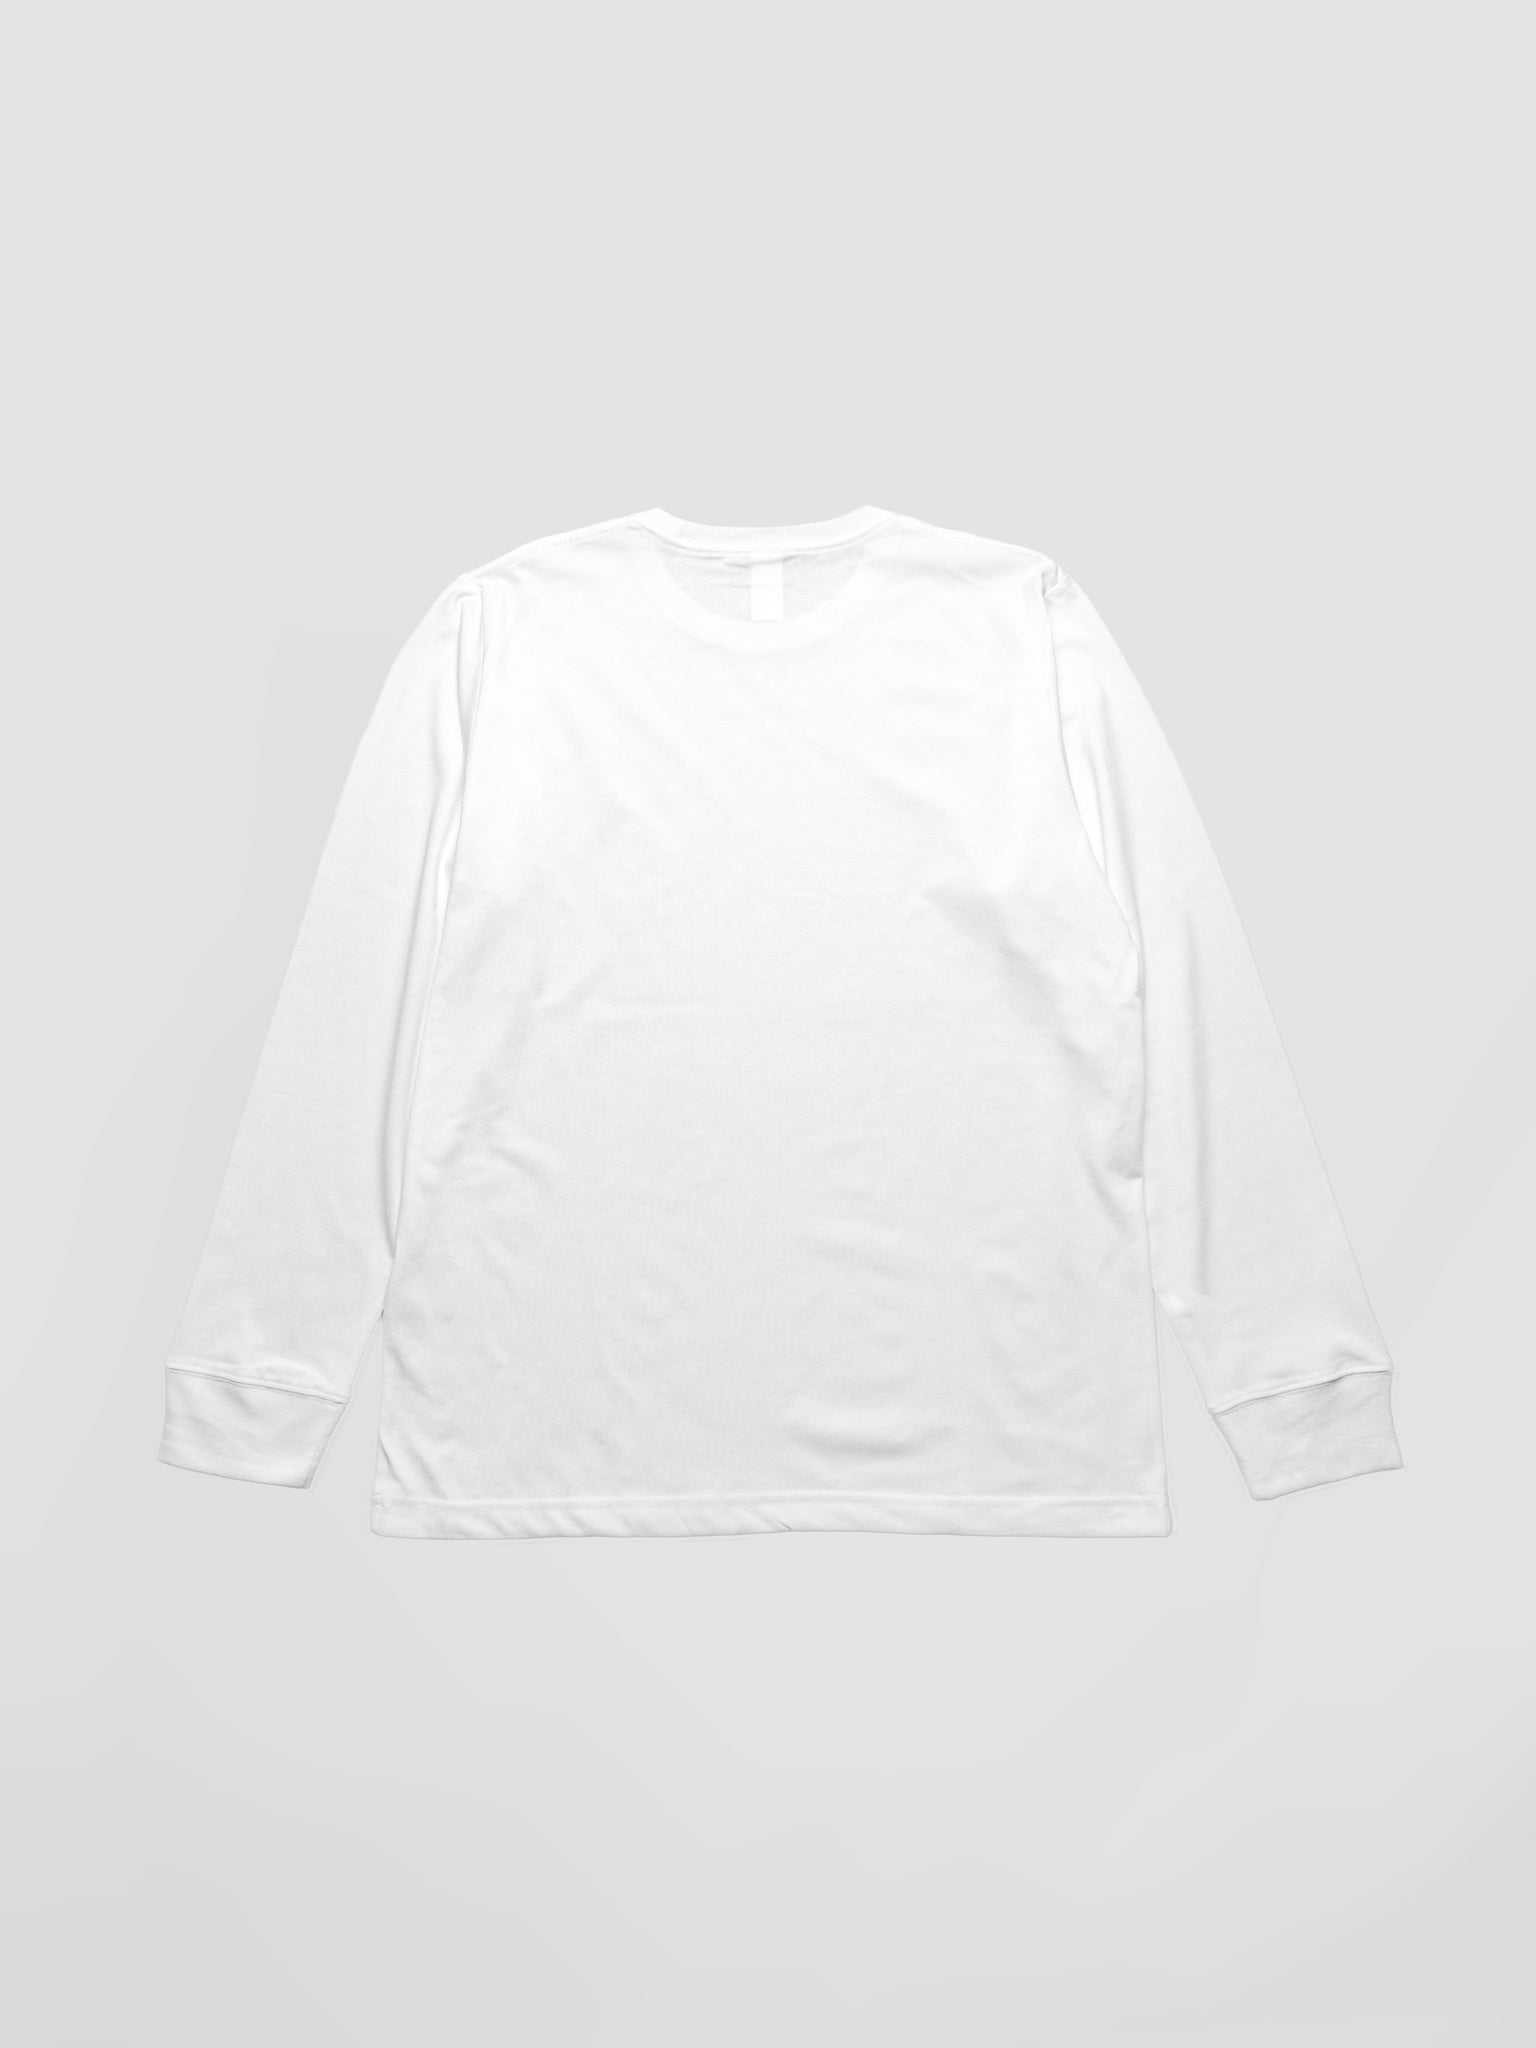 BLANK - Standard Fit Long Sleeve White - v2